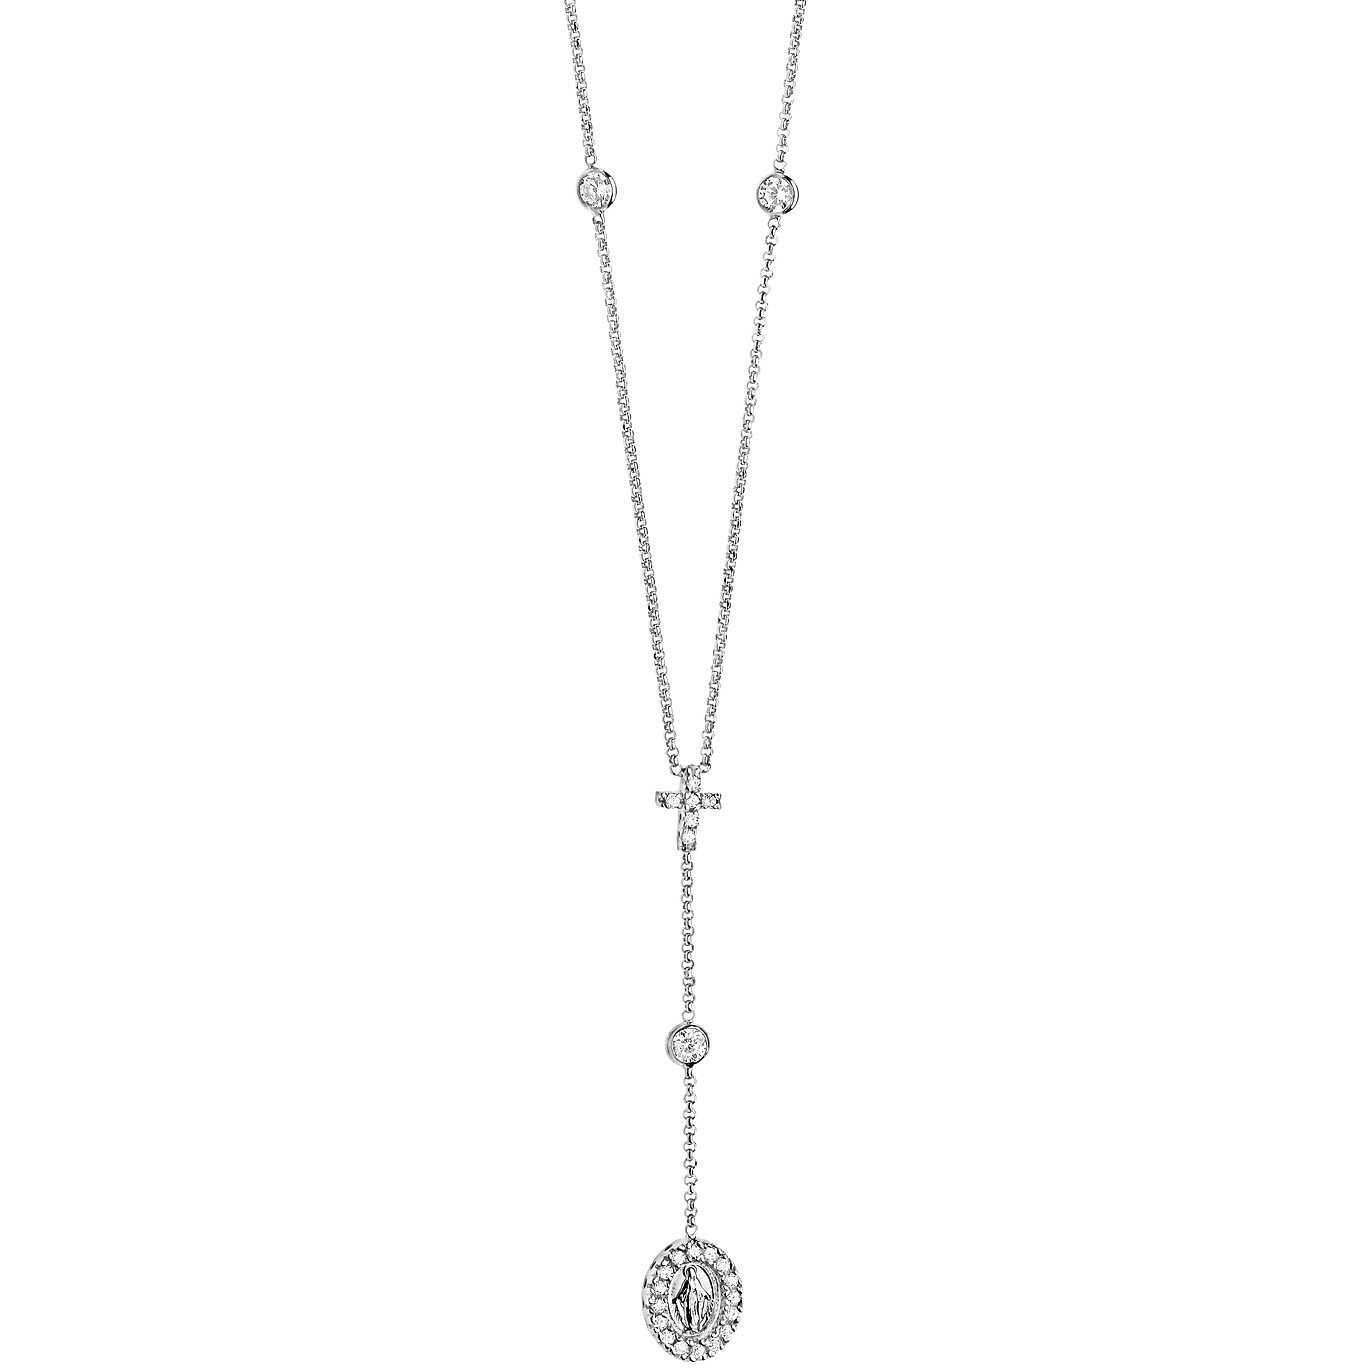 Women’s Comete Gioielli Necklace Silver 925 GLA 118